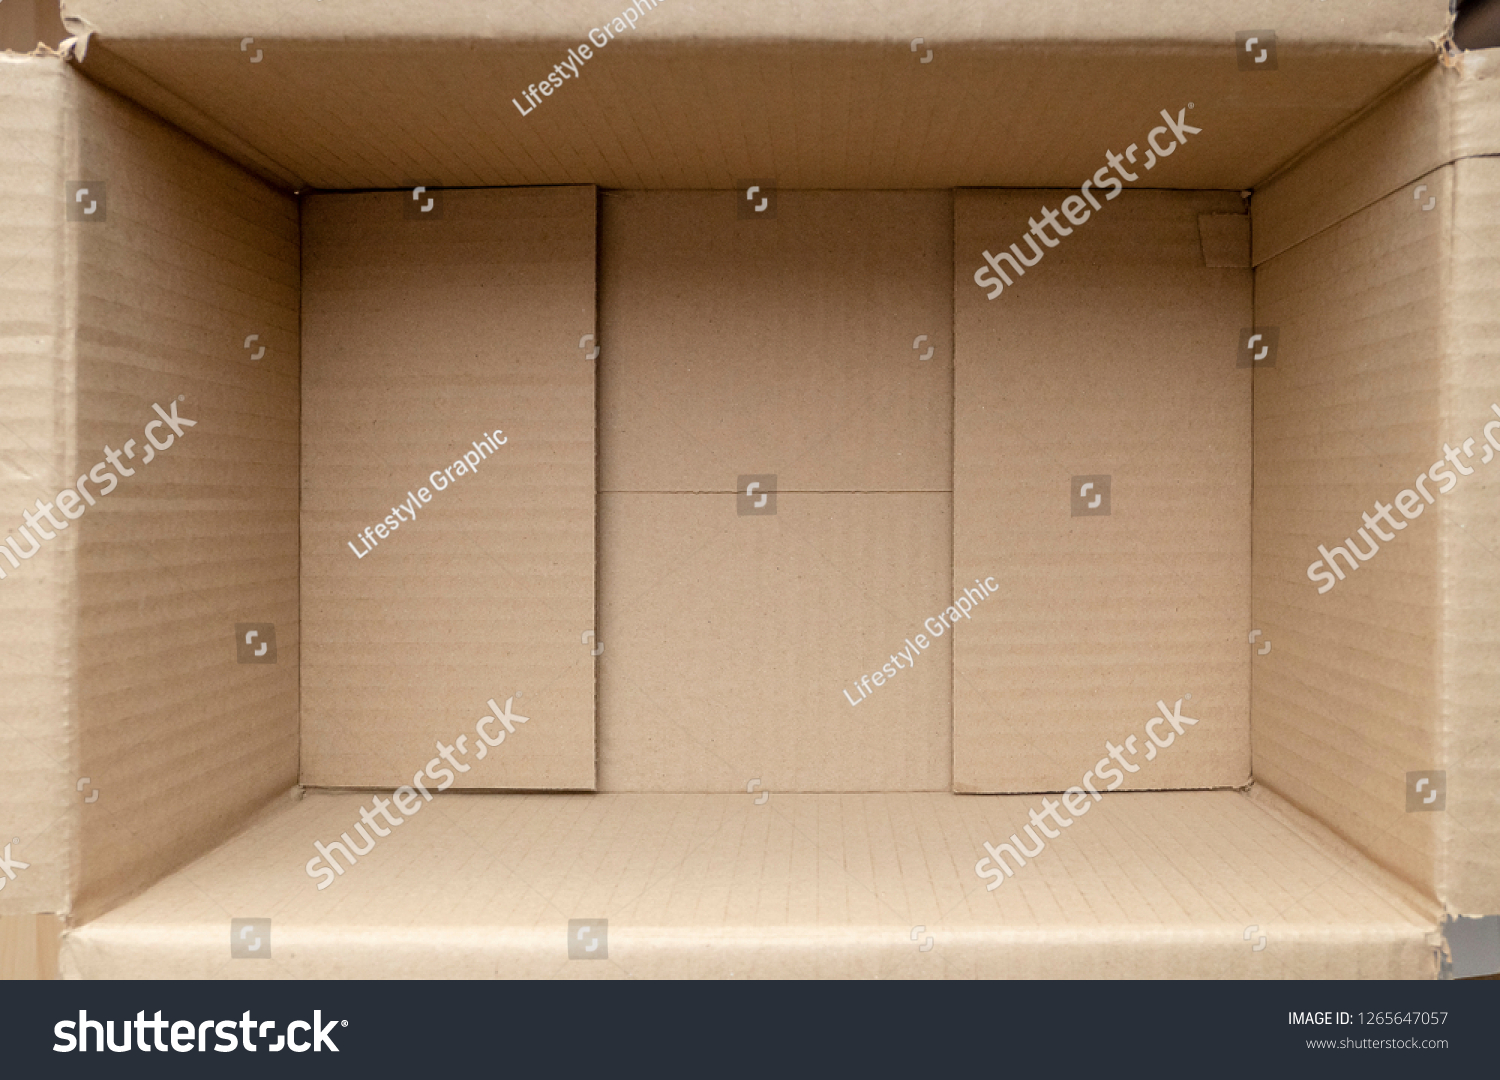 внутри фото коробки